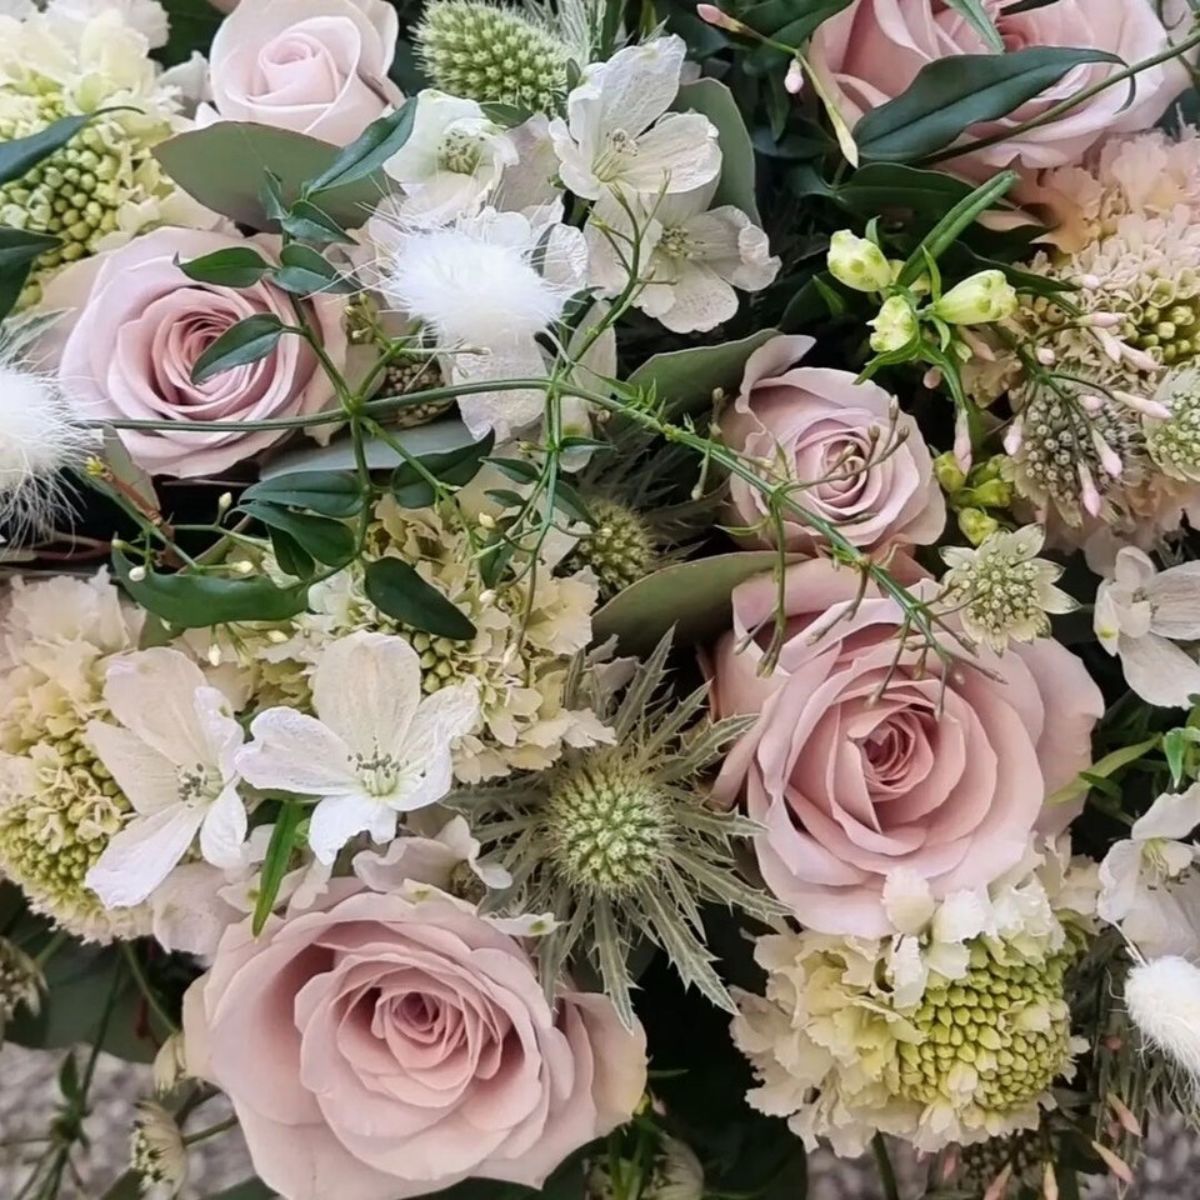 Flower arrangements featuring Rose La Vida Loca